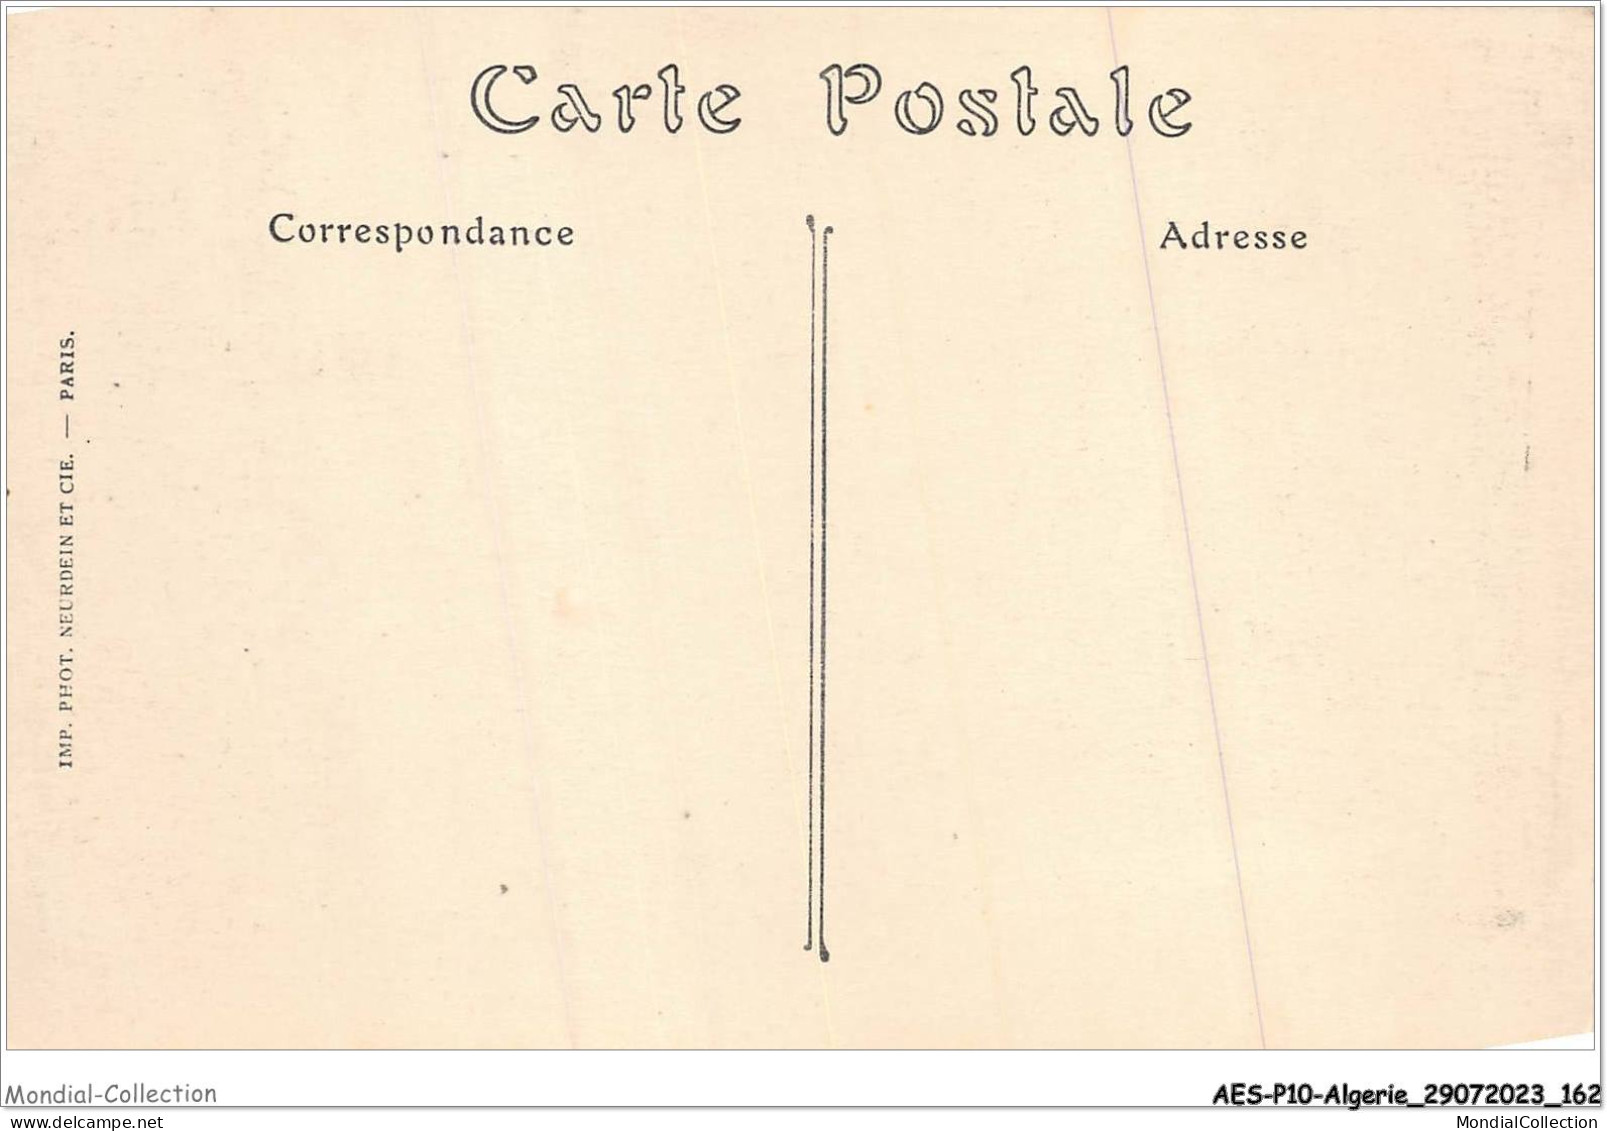 AESP10-ALGERIE-0960 - CATHEDRALE DE CONSTANTINE - Intérieur  - Constantine